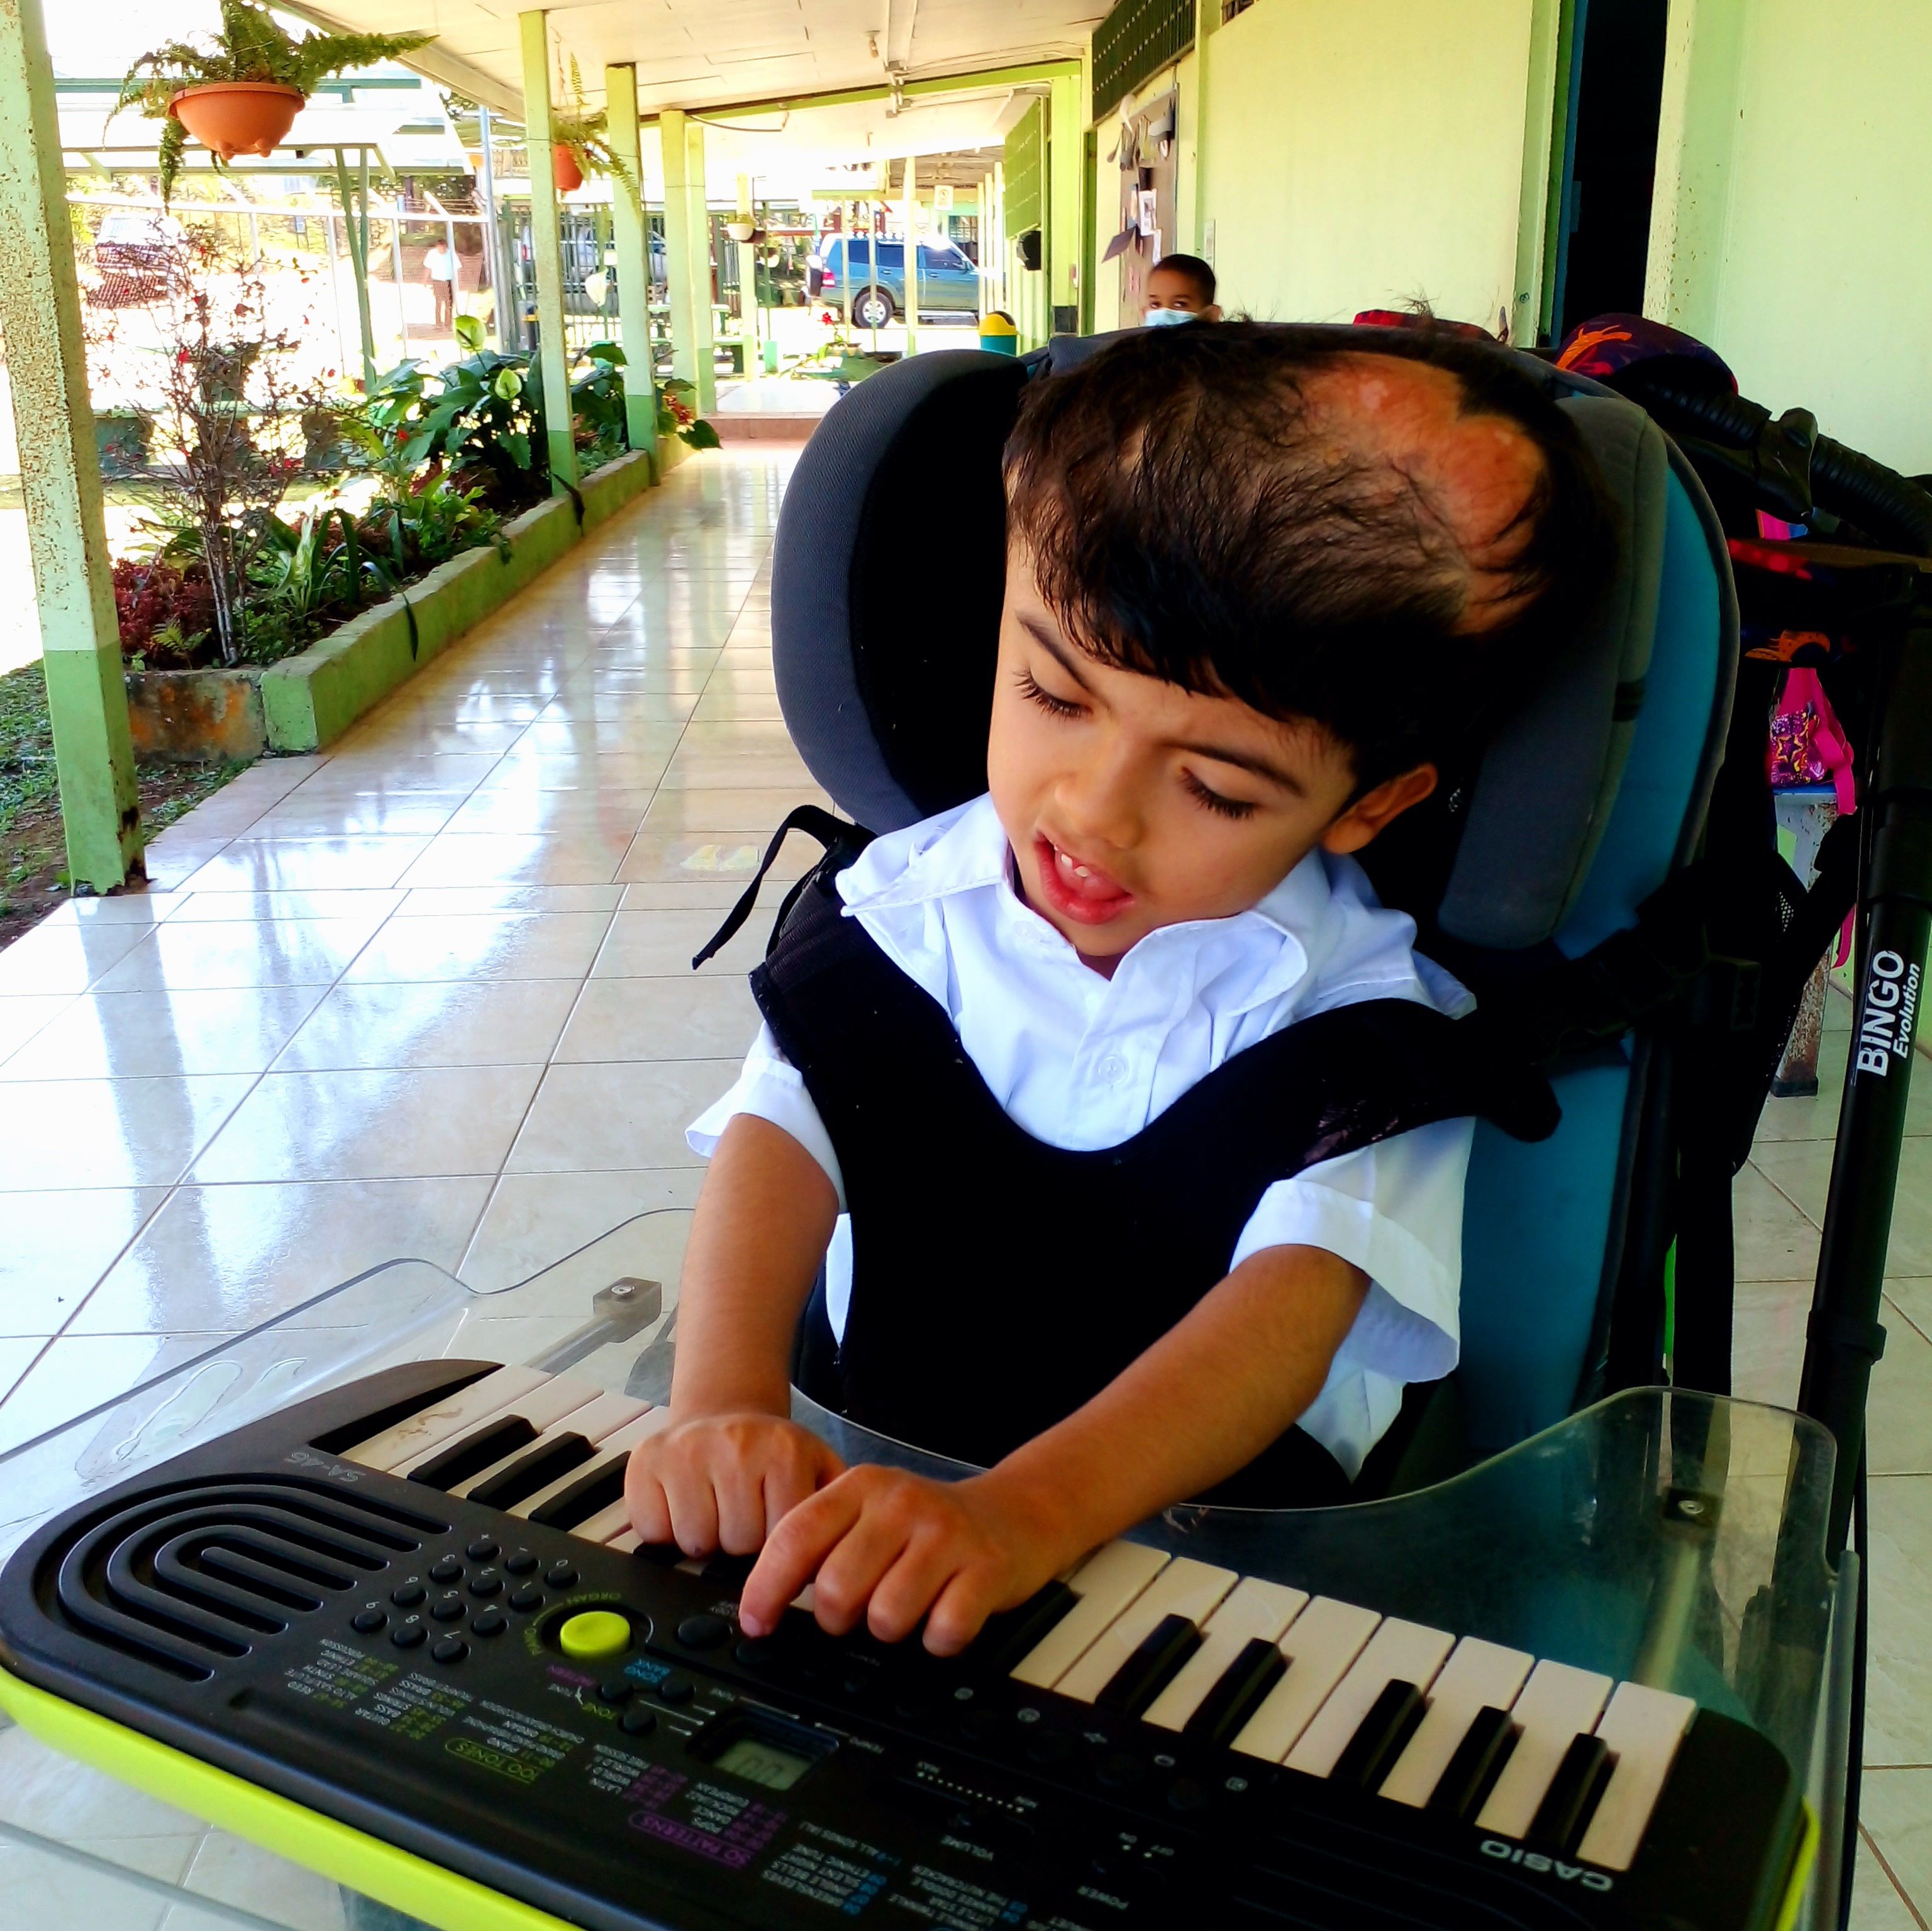 El exsiamés Ezequiel Núñez disfruta mucho de la música, es uno de sus pasatiempos favoritos. Foto: Evelyn Badilla para LN